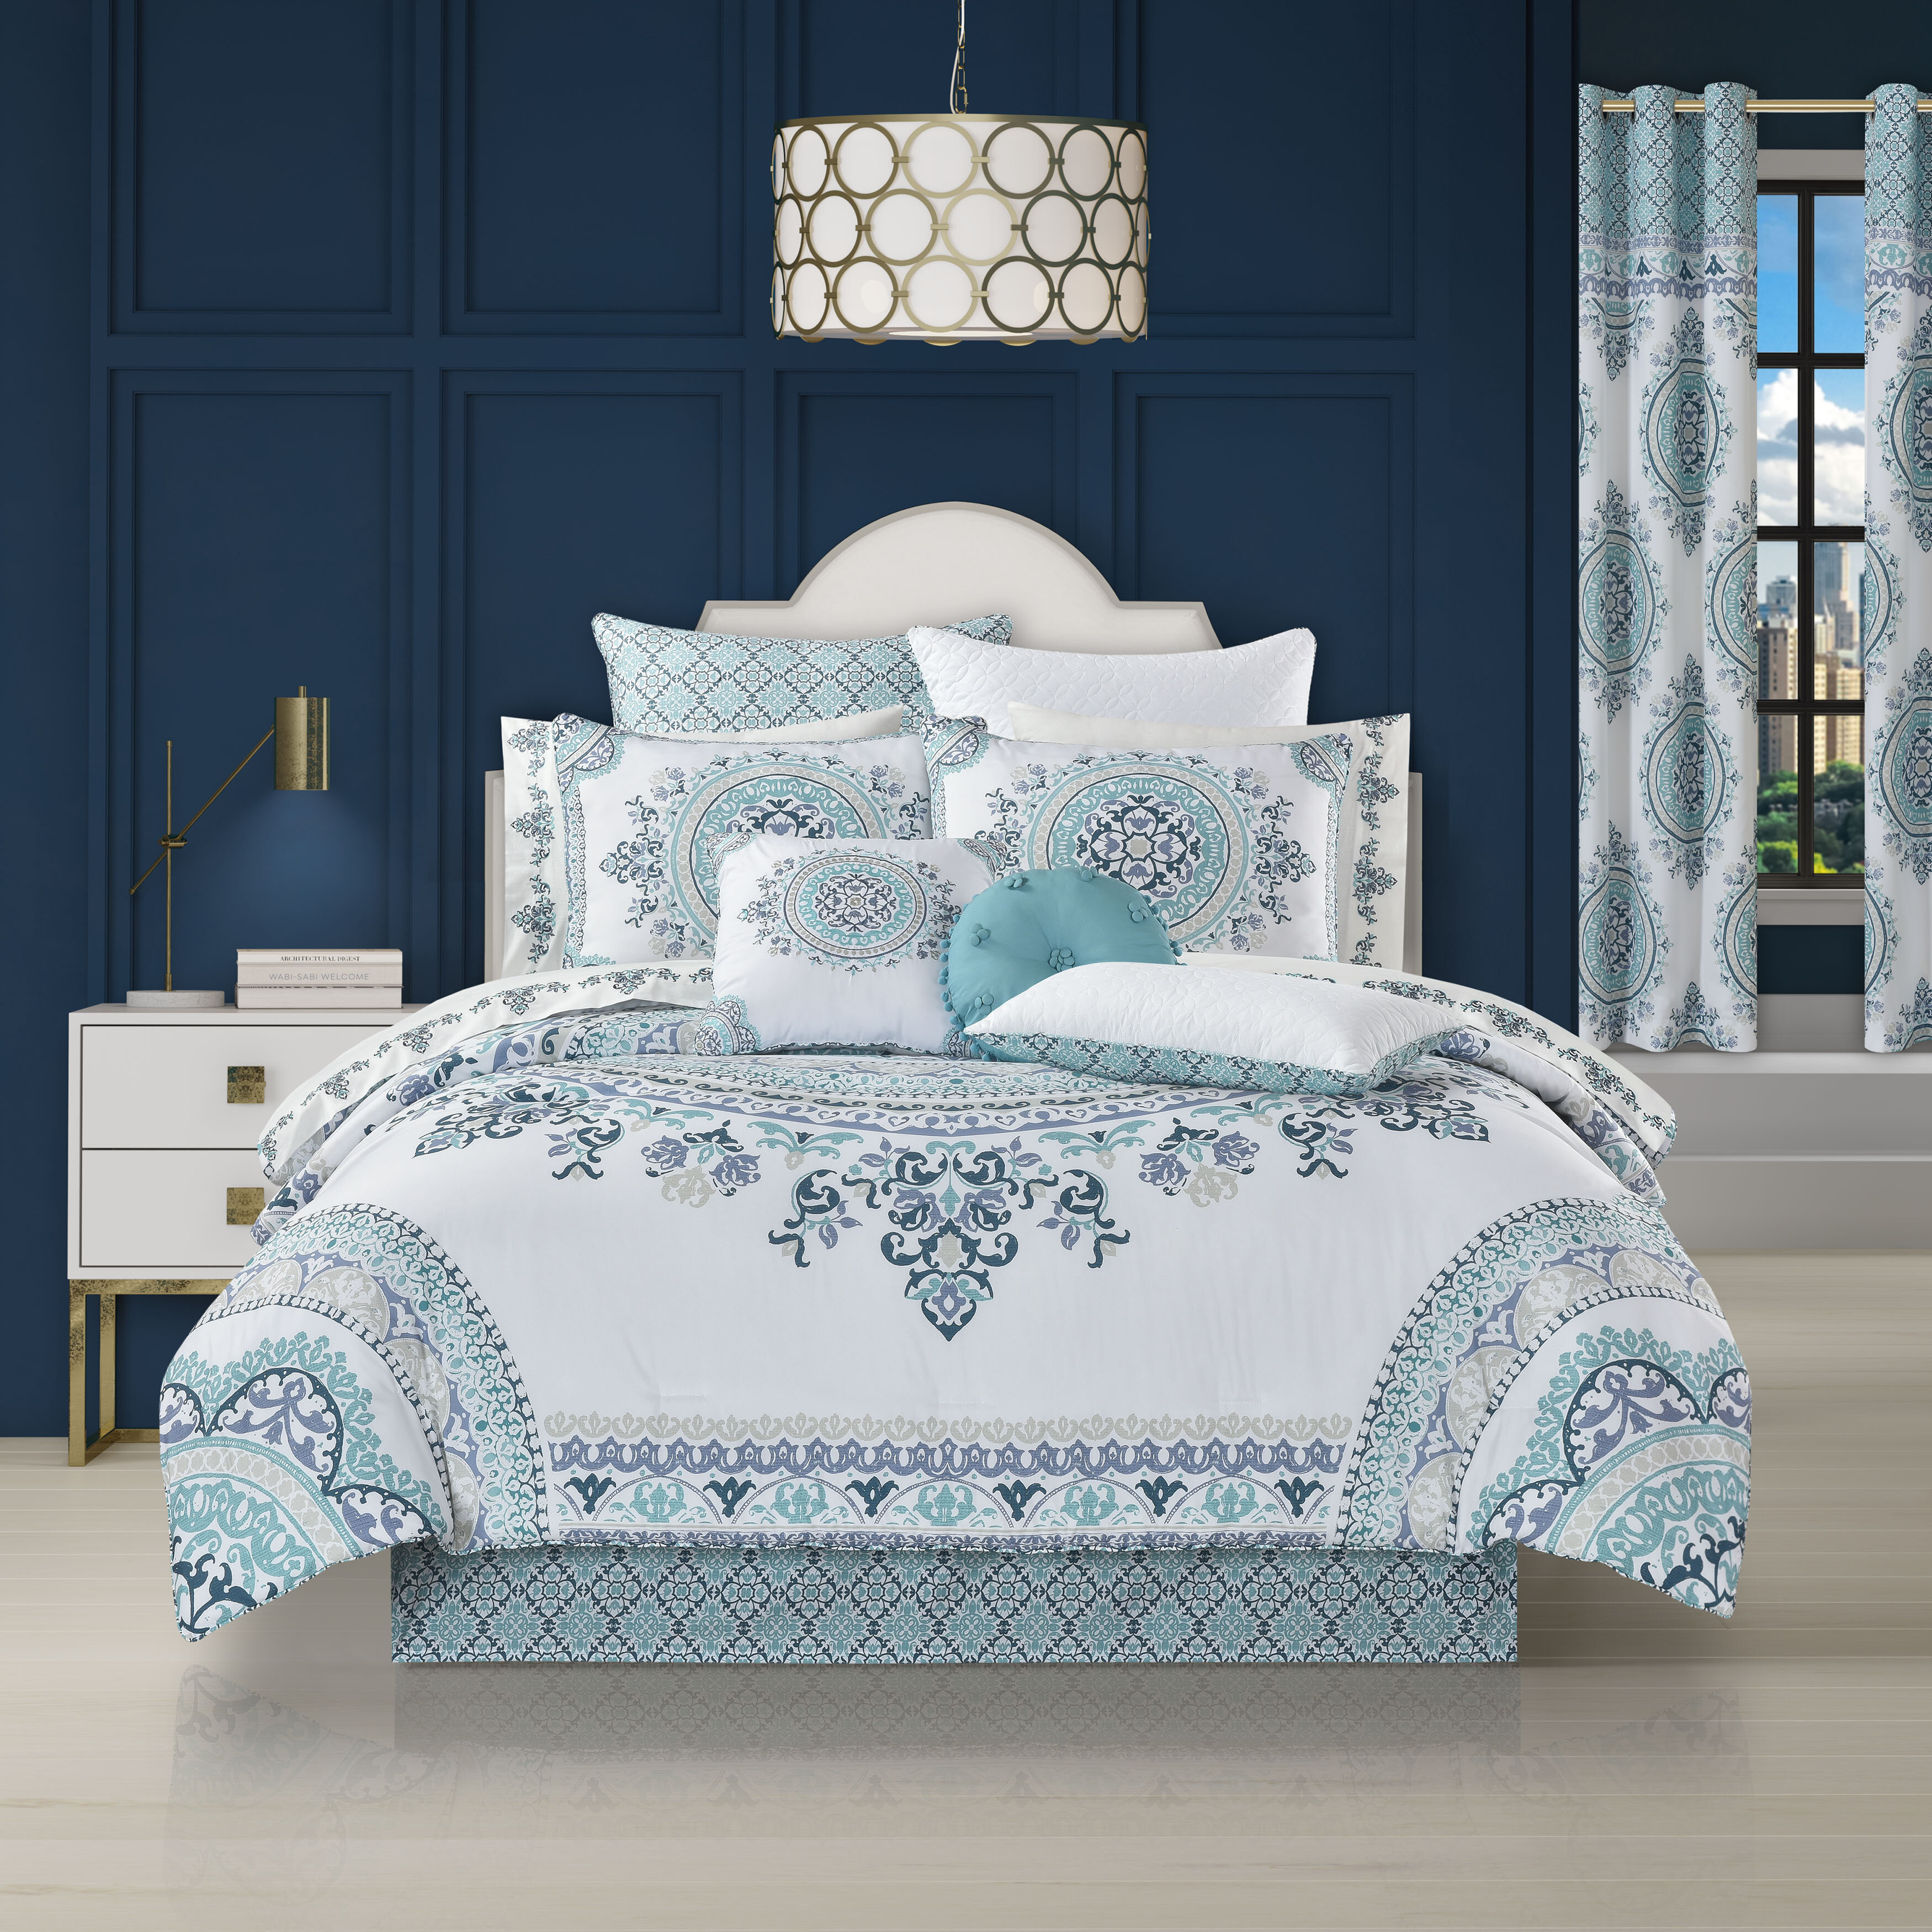 Summer Comforter Sets – Latest Bedding